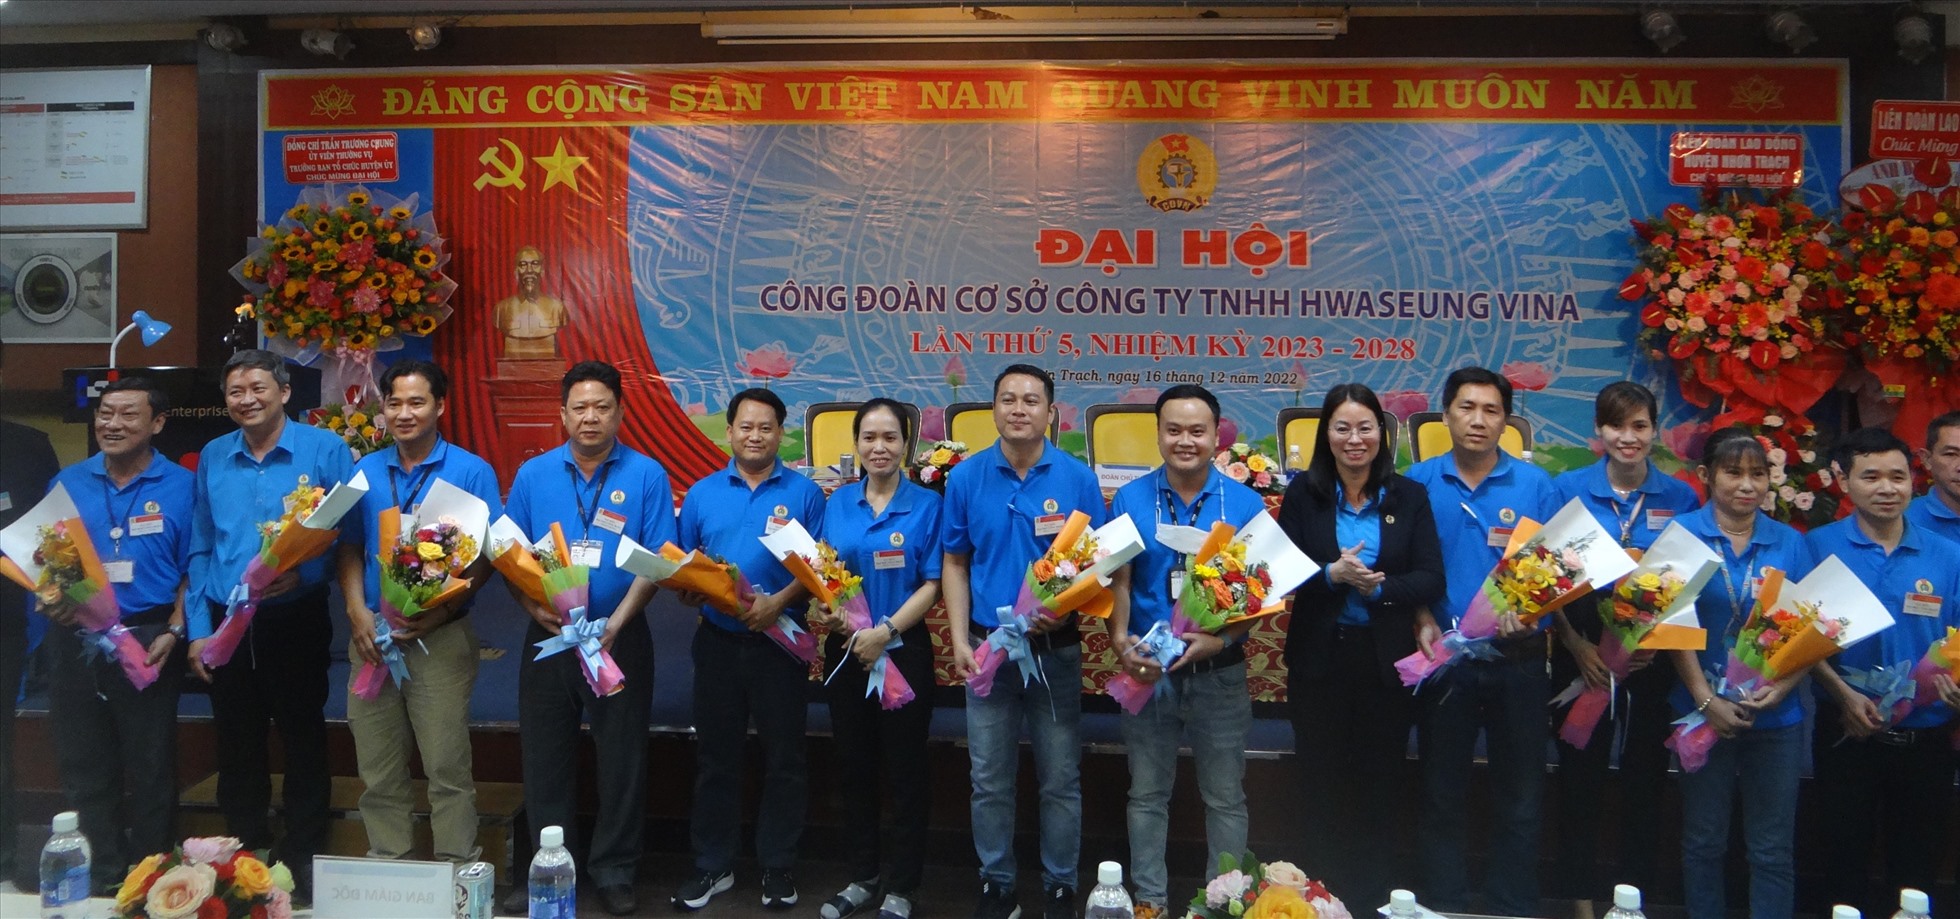 Ban chấp hành Công đoàn cơ sở Công ty TNHH Hwaseung Vina nhiệm kỳ mới ra mắt tại Đại hội. Ảnh: Xuân Mai